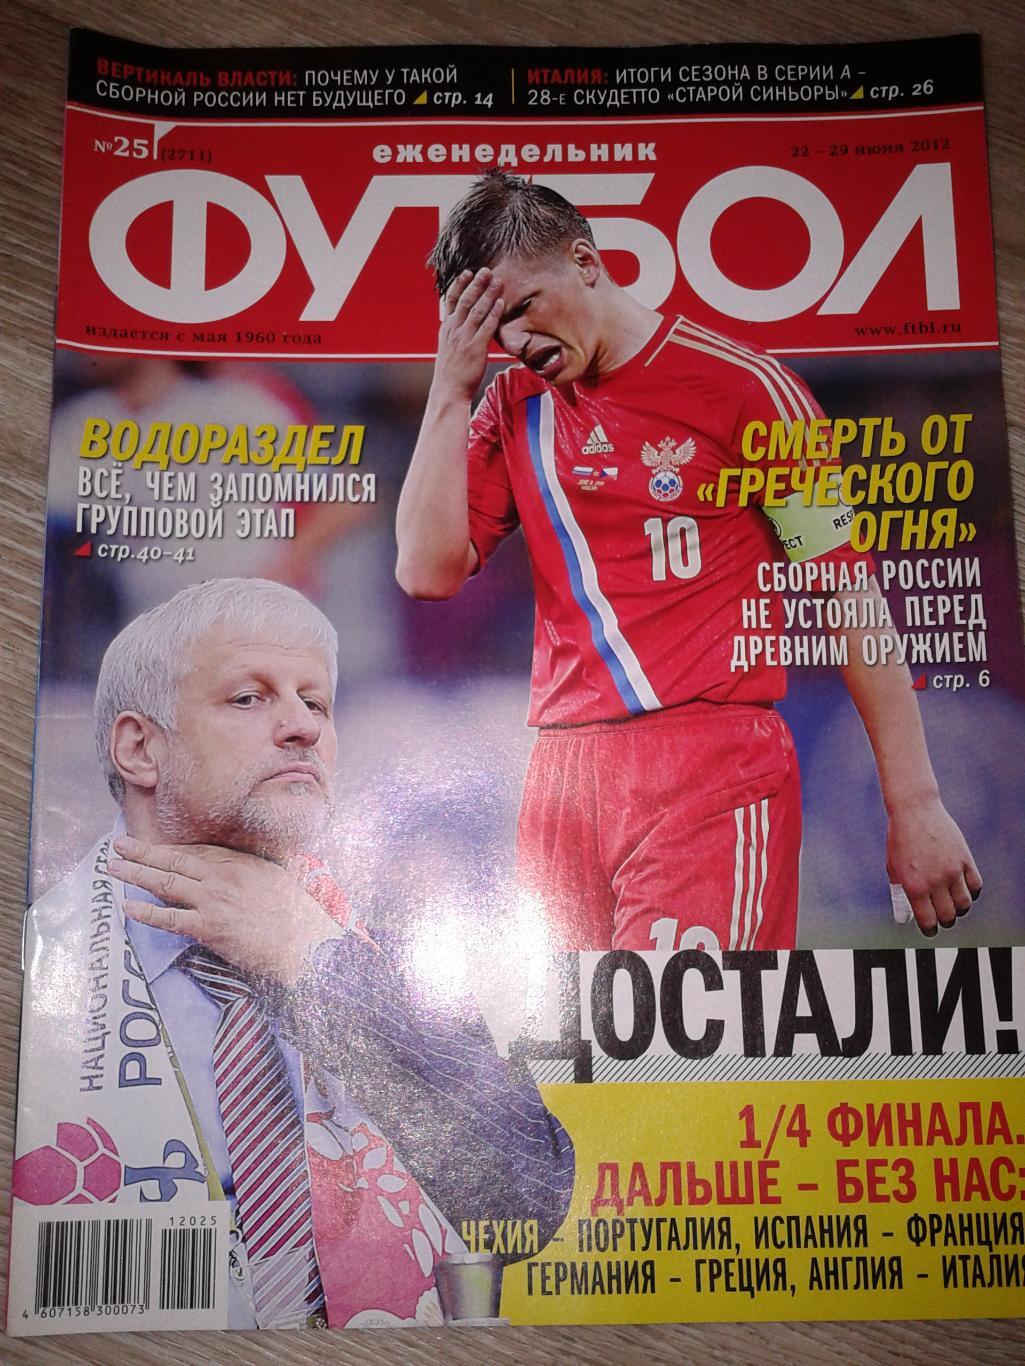 2012 Еженедельник Футбол №25